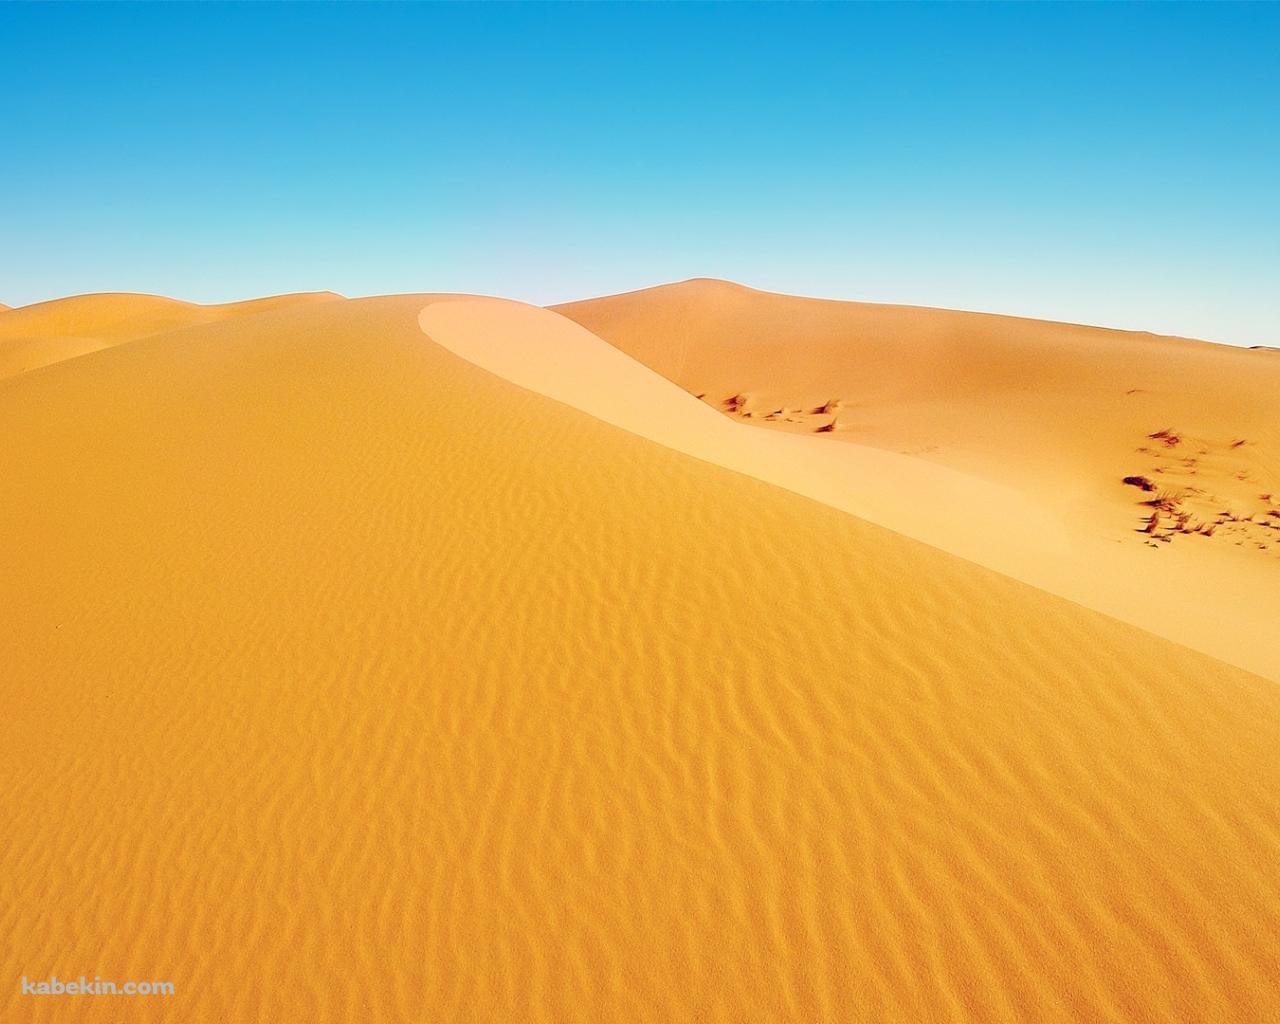 アフリカの砂漠の壁紙(1280px x 1024px) 高画質 PC・デスクトップ用